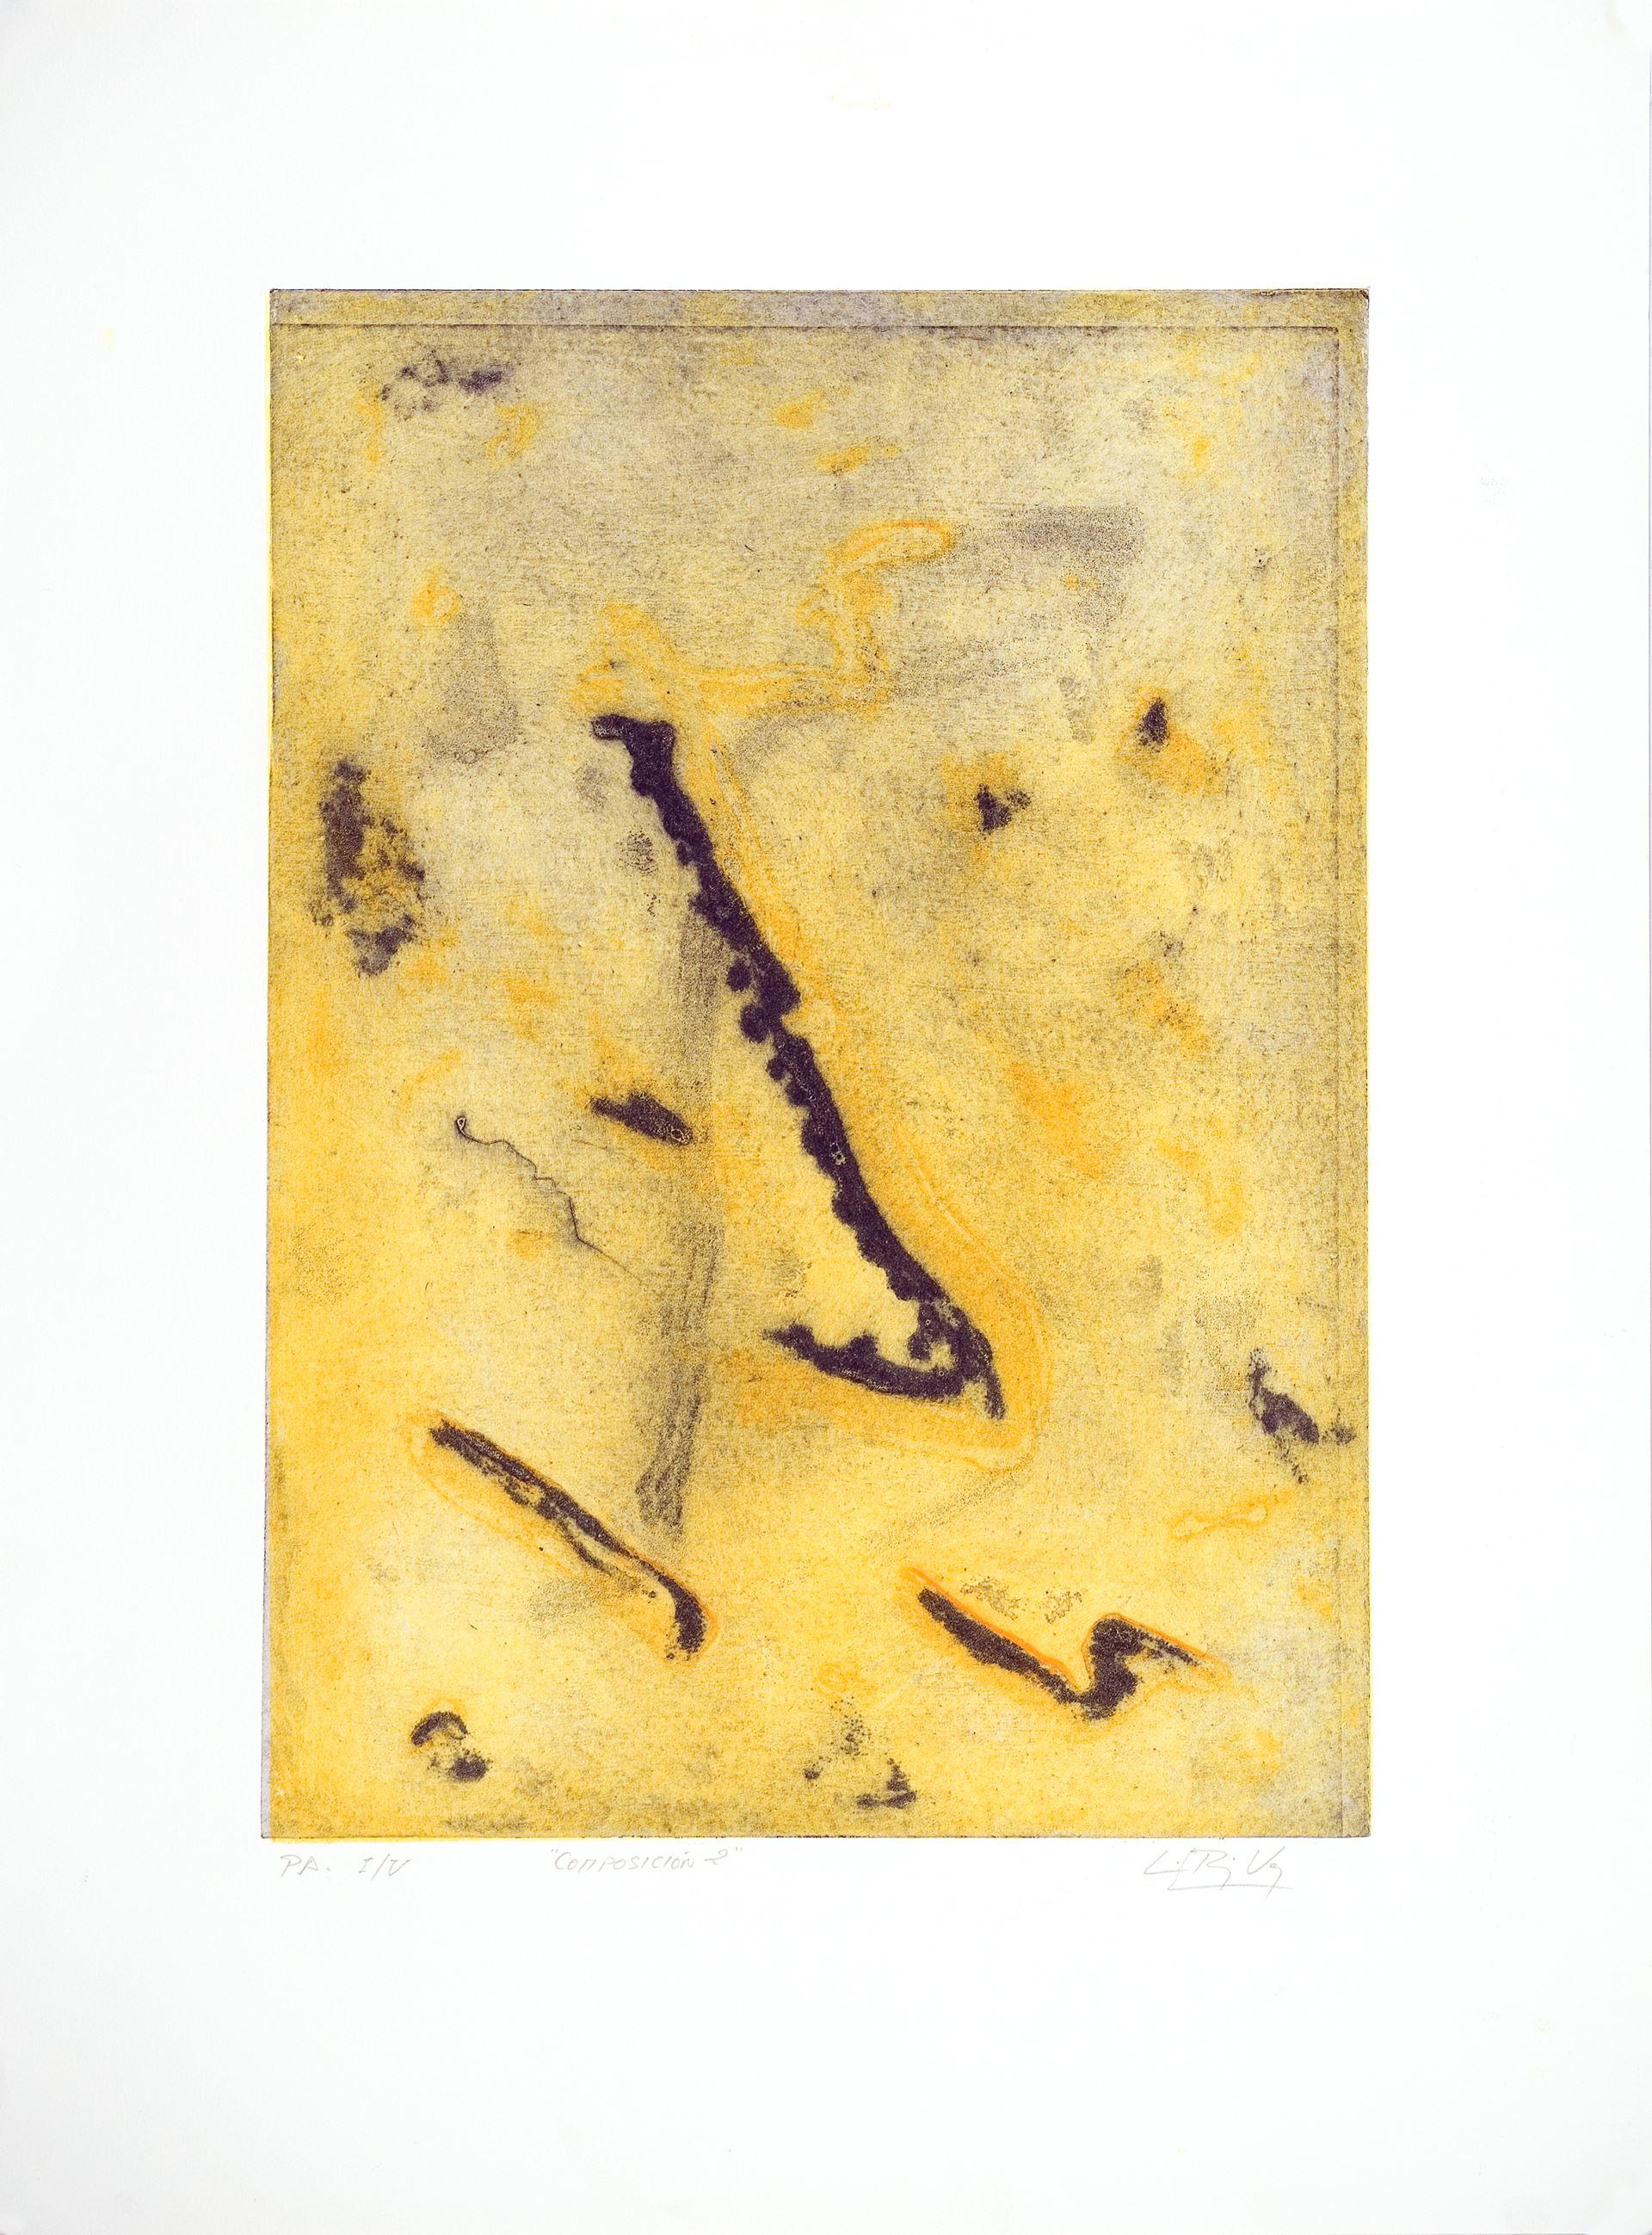 Luis Pérez Vega (Spanien, 1976)
Komposition II", 1995
Gravur auf Papier
14,6 x 20,5 Zoll (37 x 52 cm)
Auflage von 5
ID: PER1275-007-005
Vom Autor handsigniert